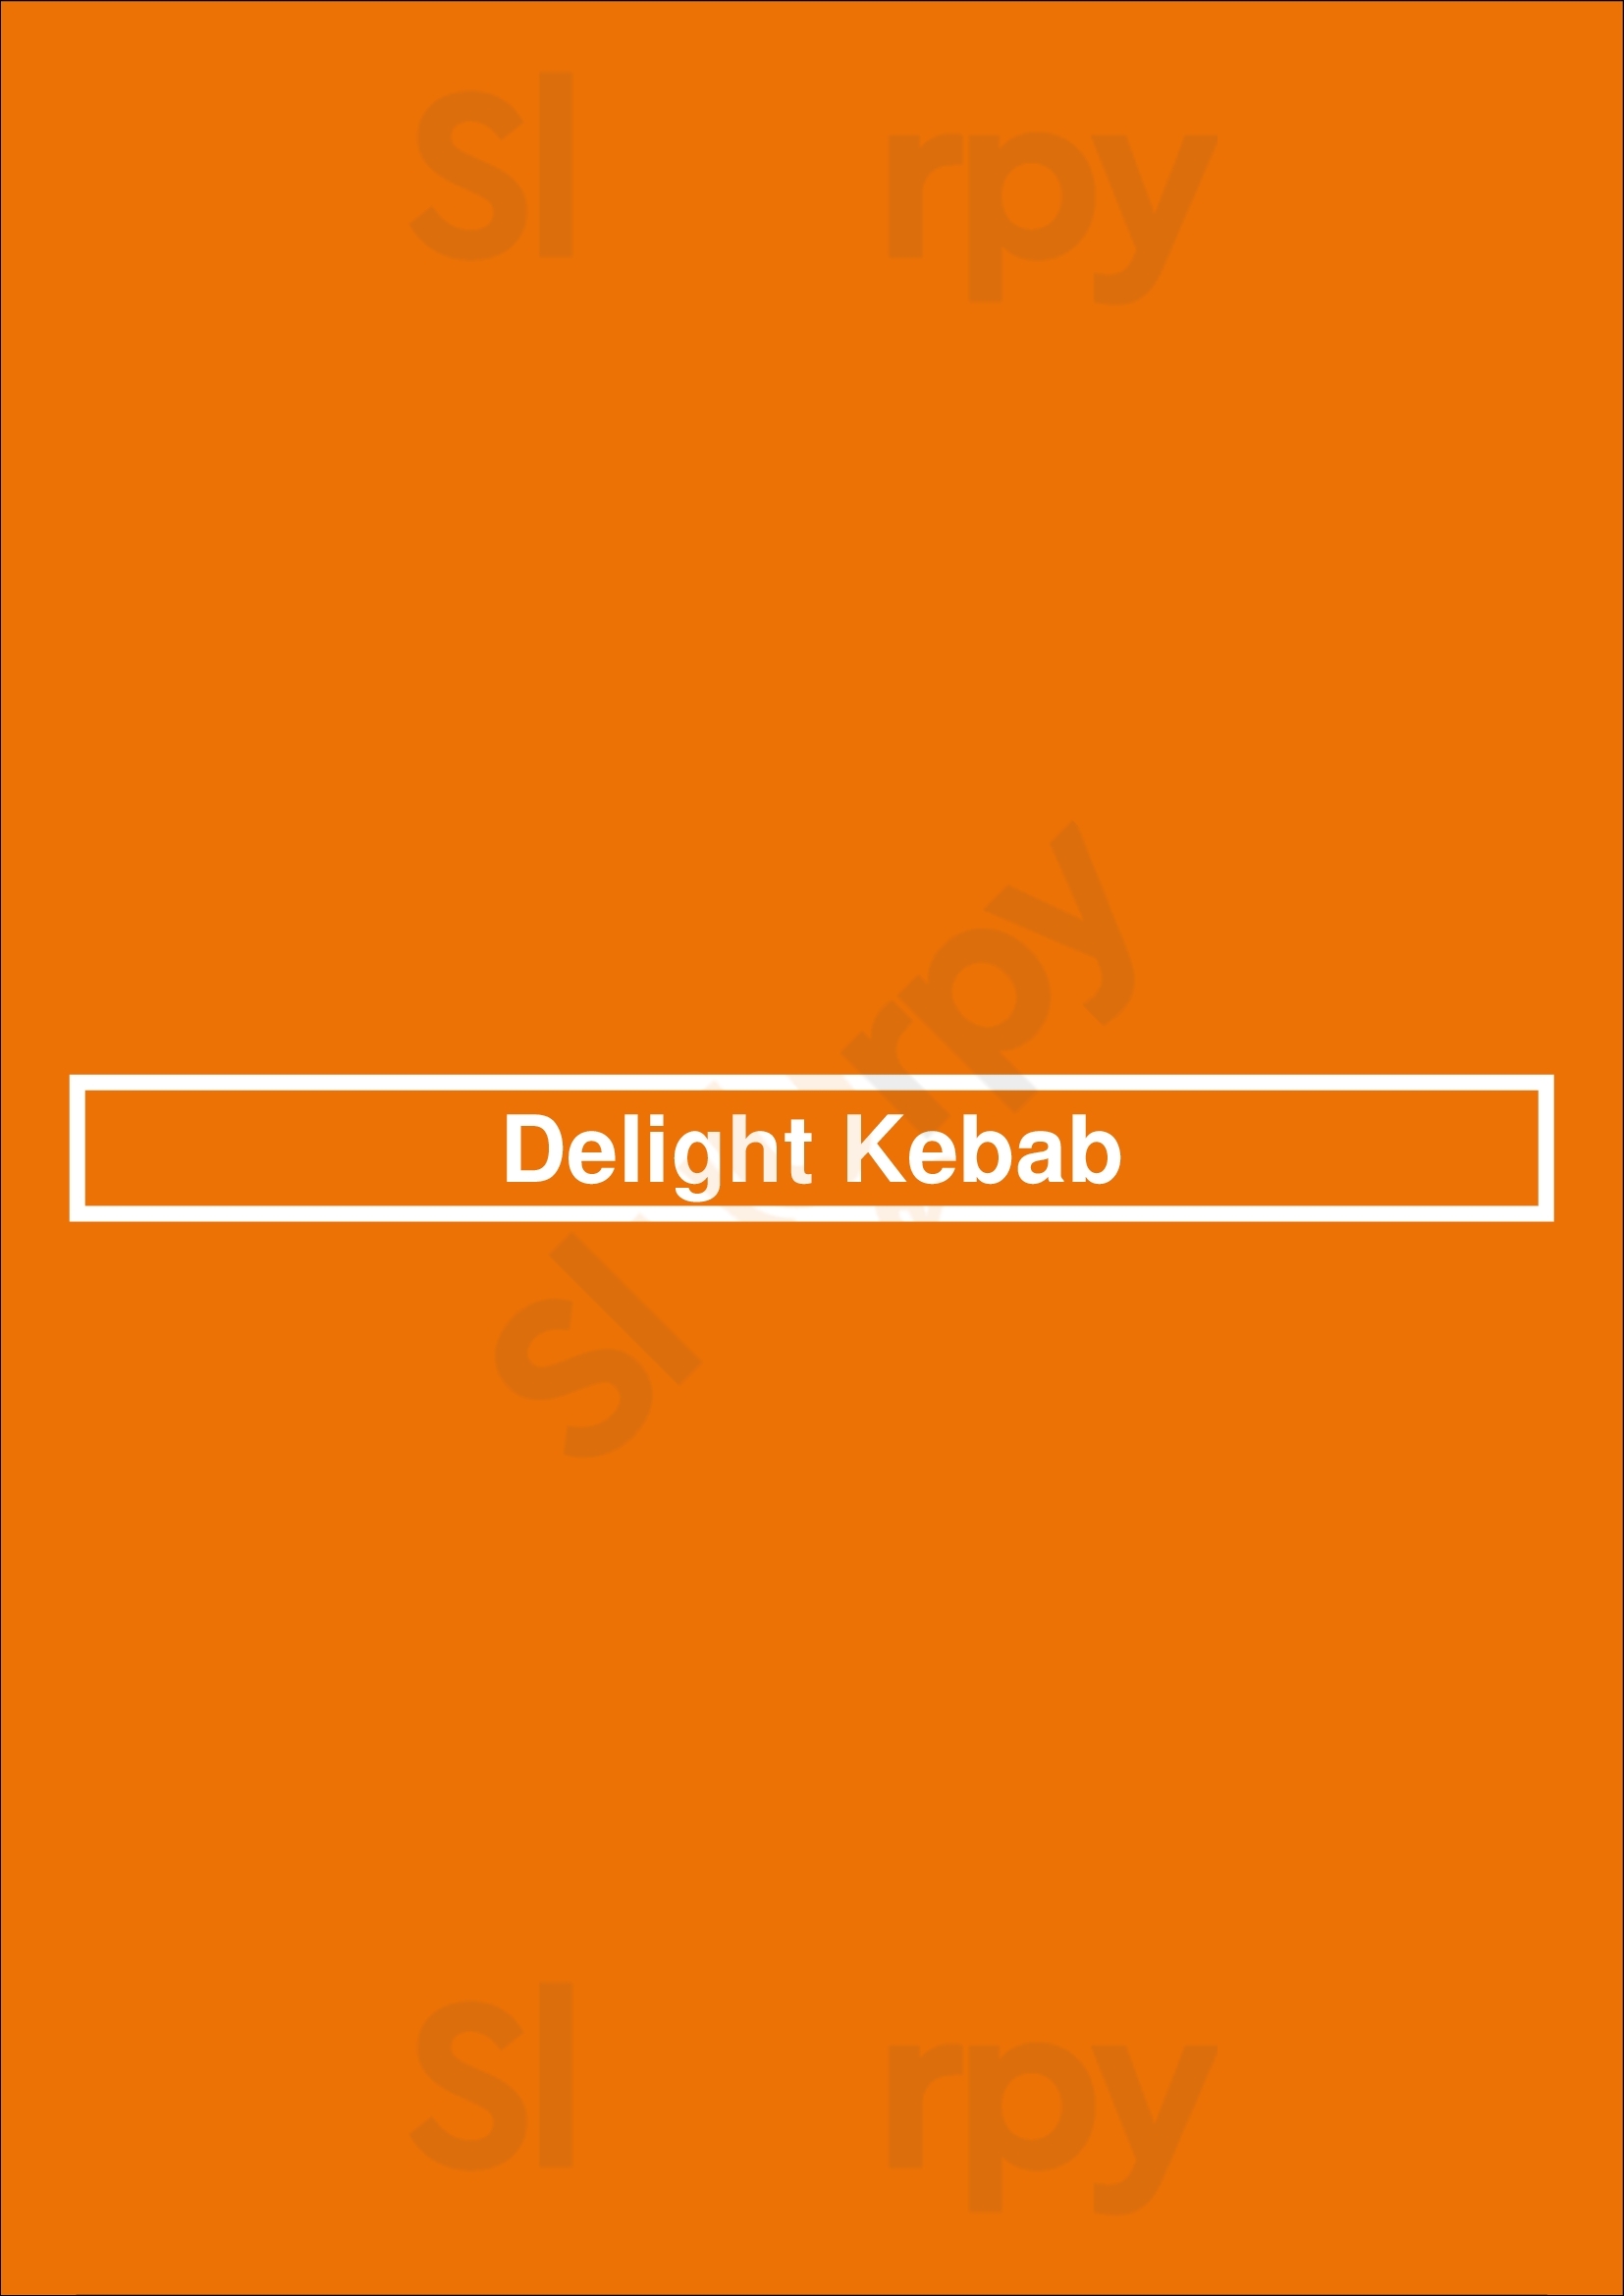 Delight Kebab Brighton Menu - 1